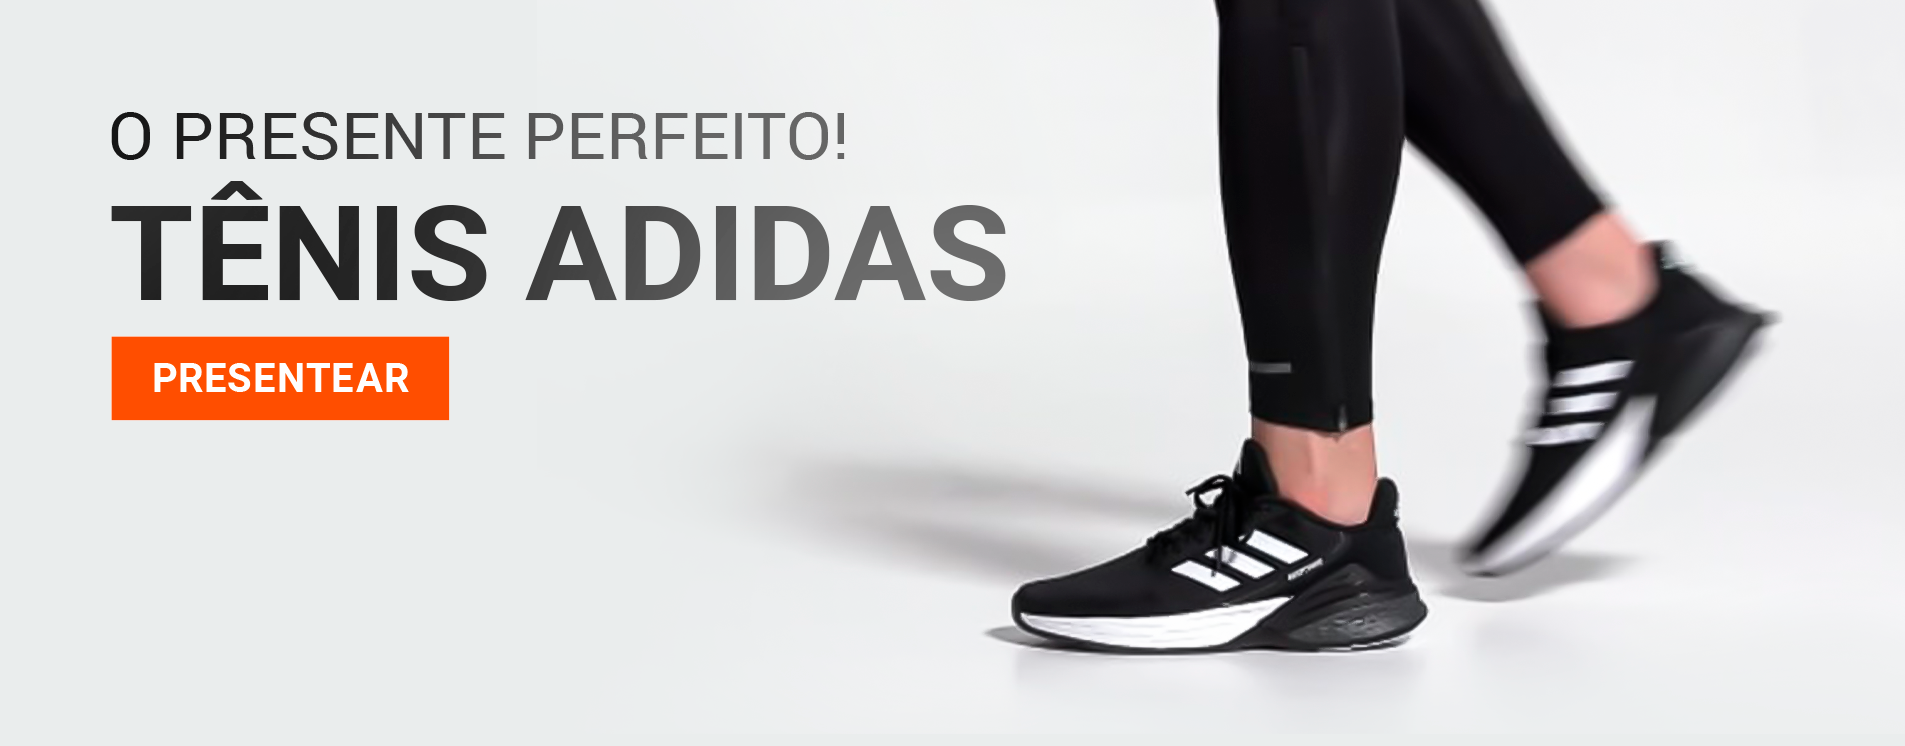 Tênis Adidas - Web